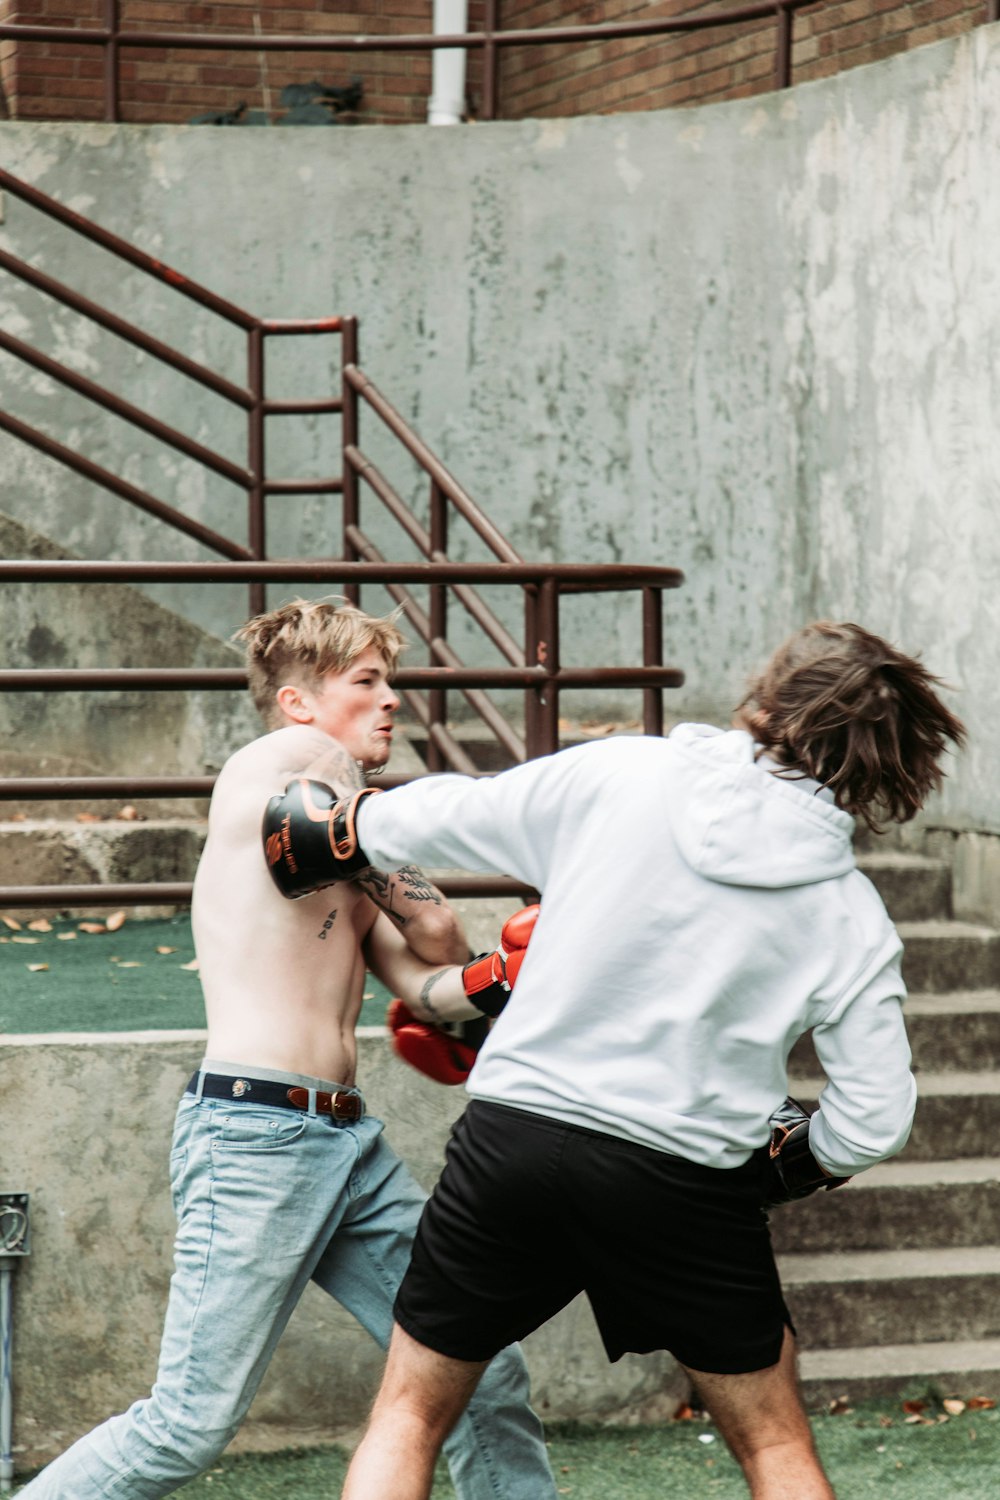 두 젊은이가 밖에서 권투를 연습하고 있다